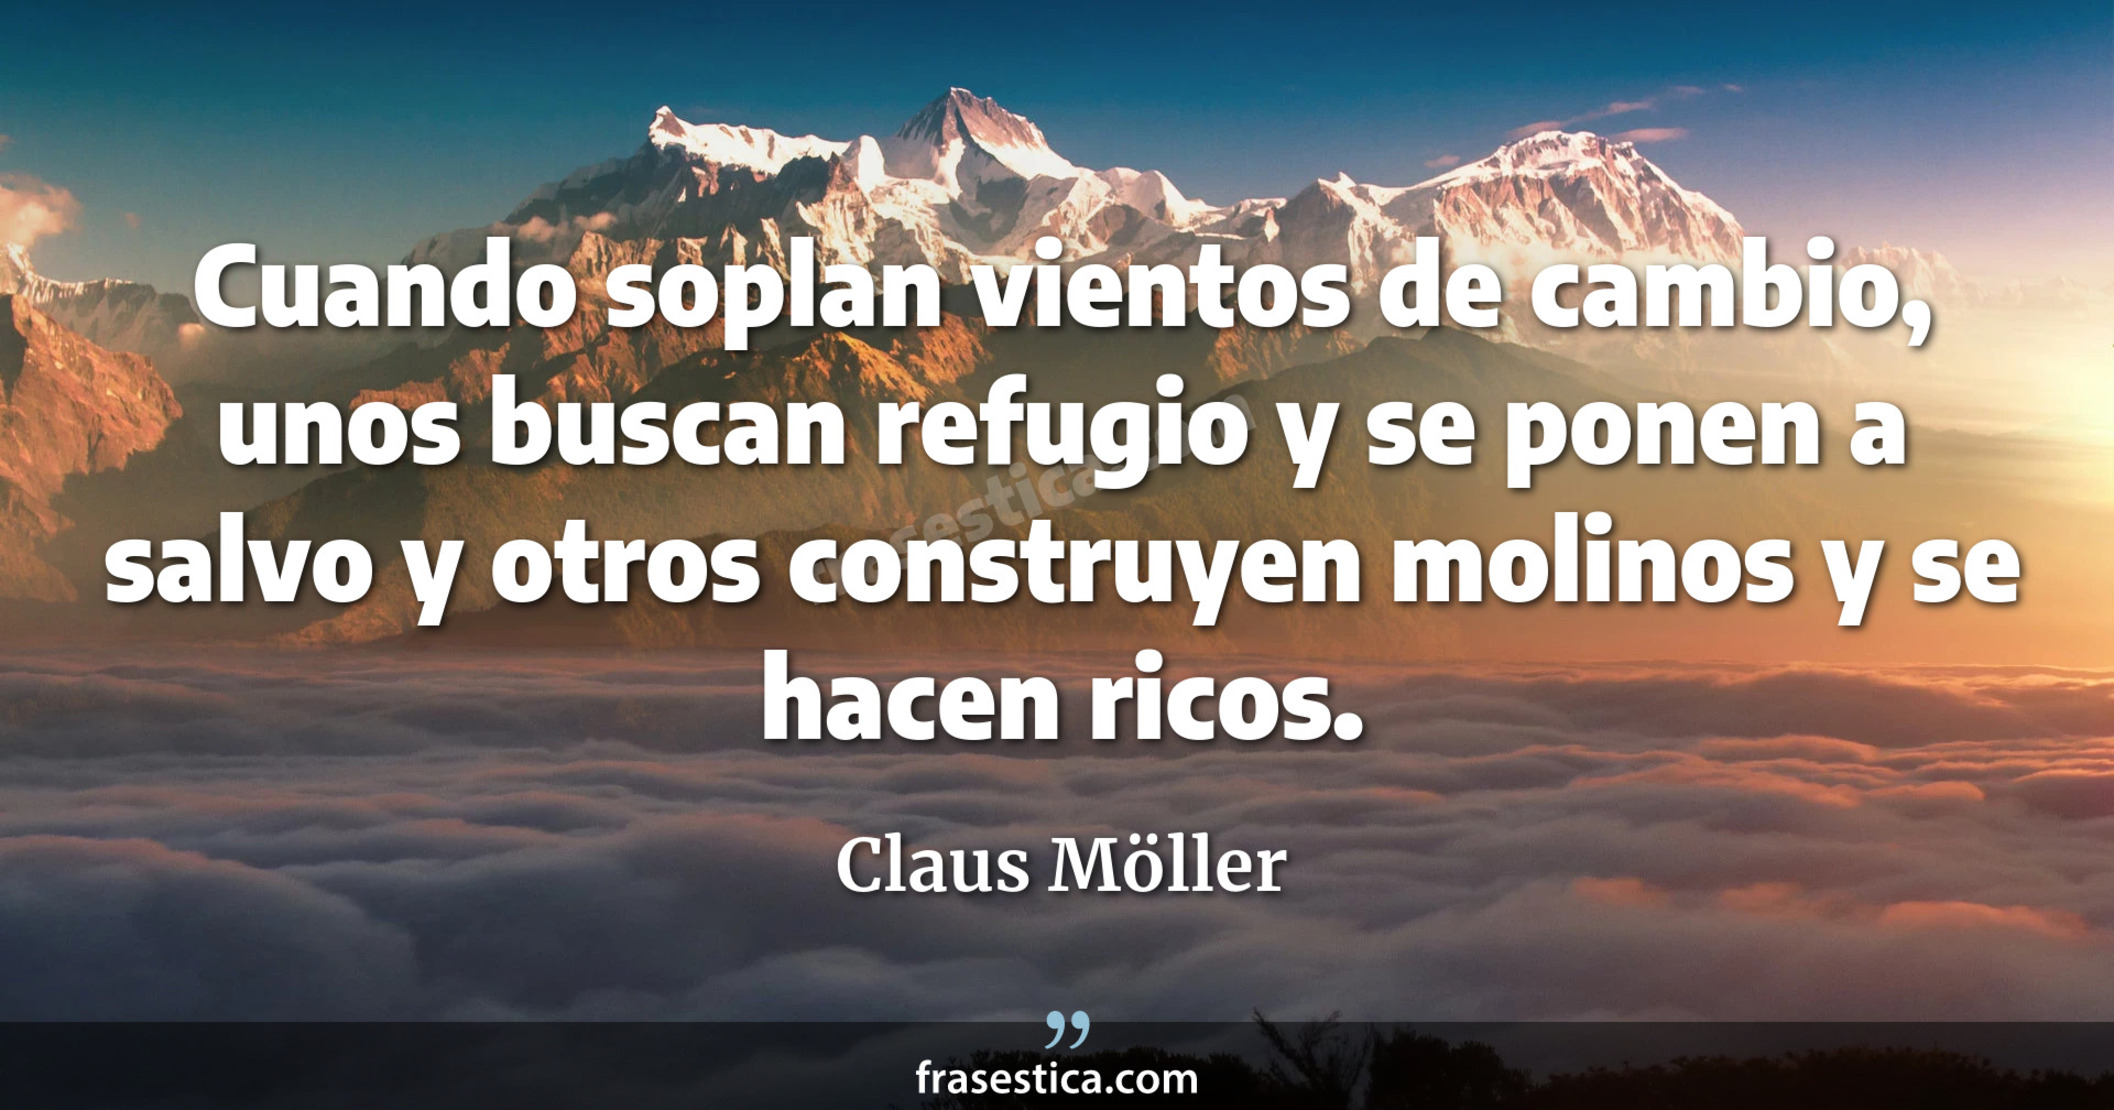 Cuando soplan vientos de cambio, unos buscan refugio y se ponen a salvo y otros construyen molinos y se hacen ricos. - Claus Möller